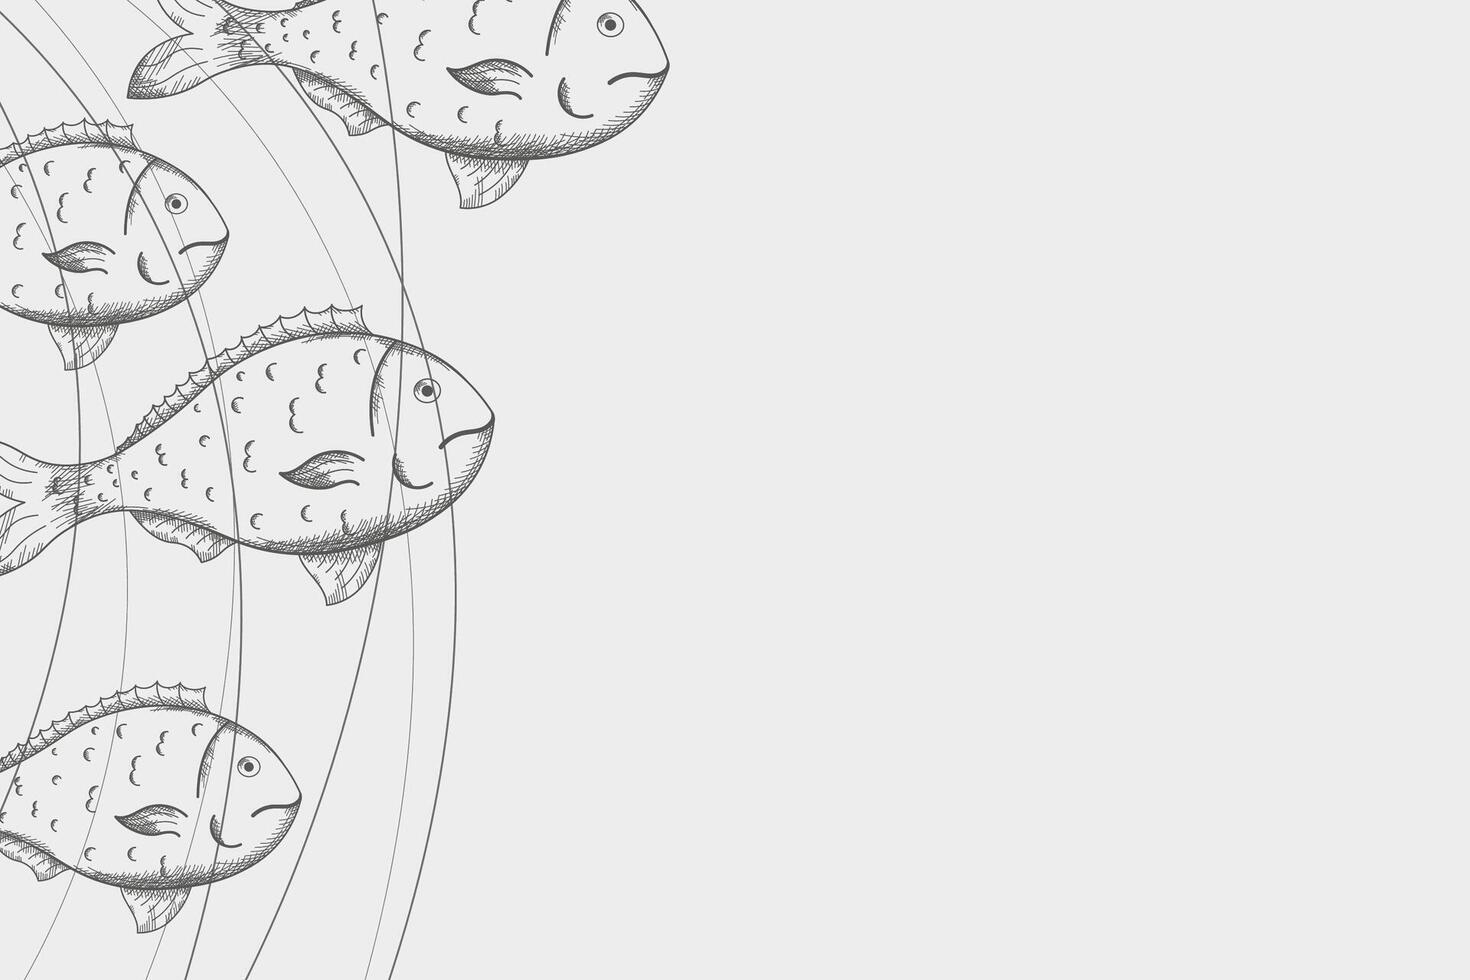 Fisch Dorado skizzieren Hintergrund Hand gezeichnet Vektor Illustration. Meeresfrüchte Design Rahmen Karte mit graviert Fisch unter Wasser und Wellen, Marine Motiv zum Sommer, Strand Erholungsort, Essen Speisekarte, Poster, Etikette Logo